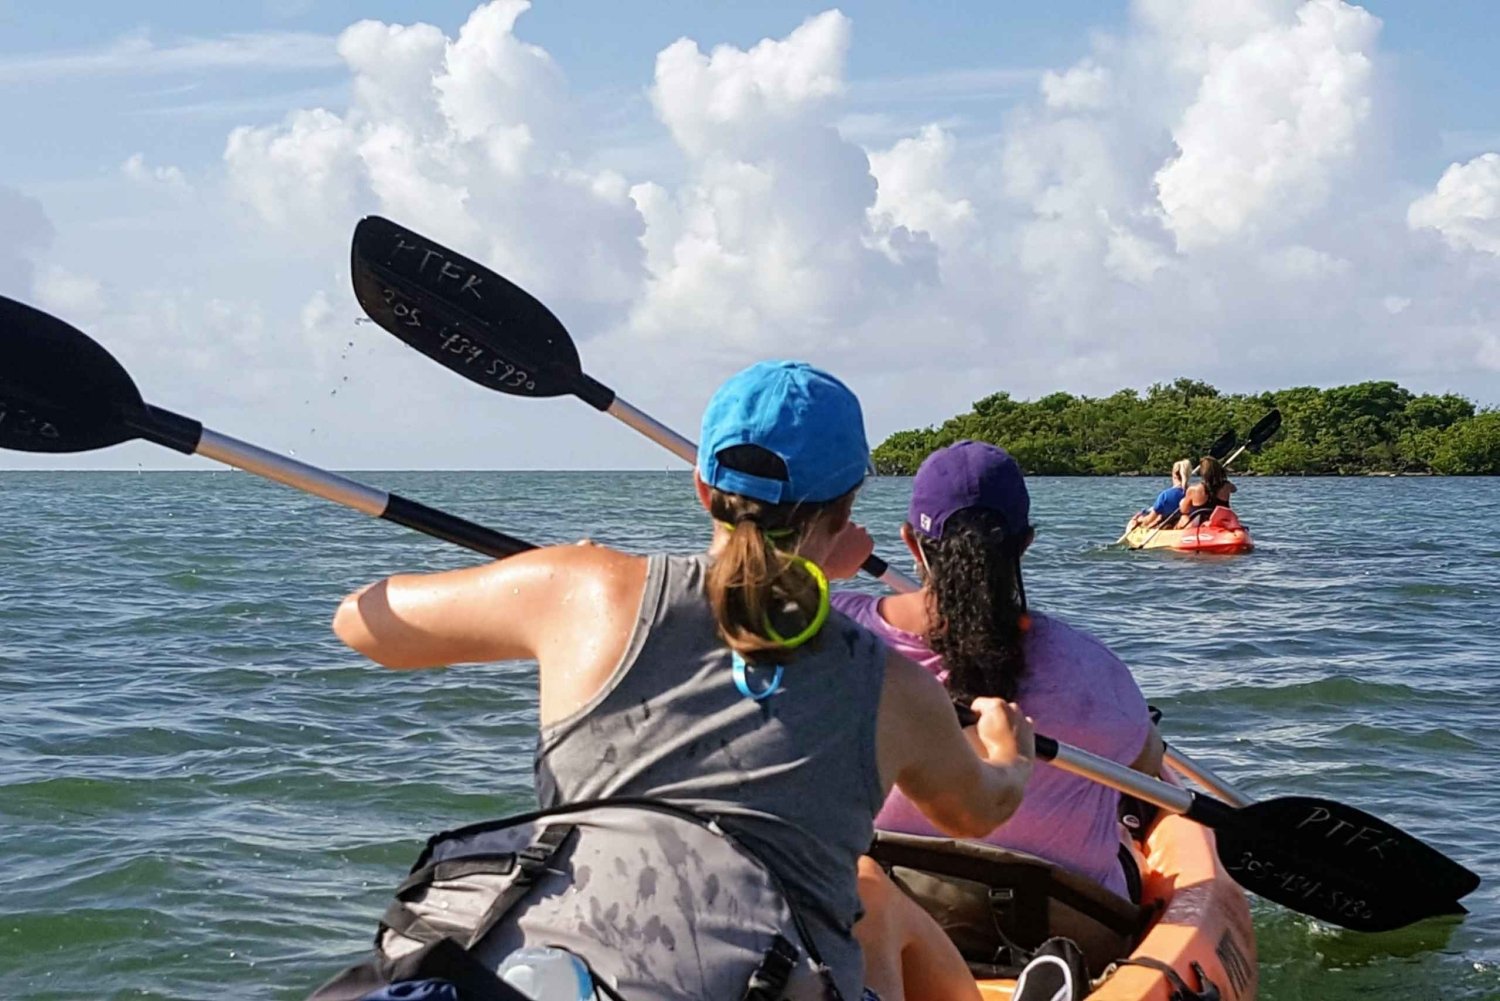 Florida Keys: Ganztägiges Kayak- und Schnorchel-Abenteuer